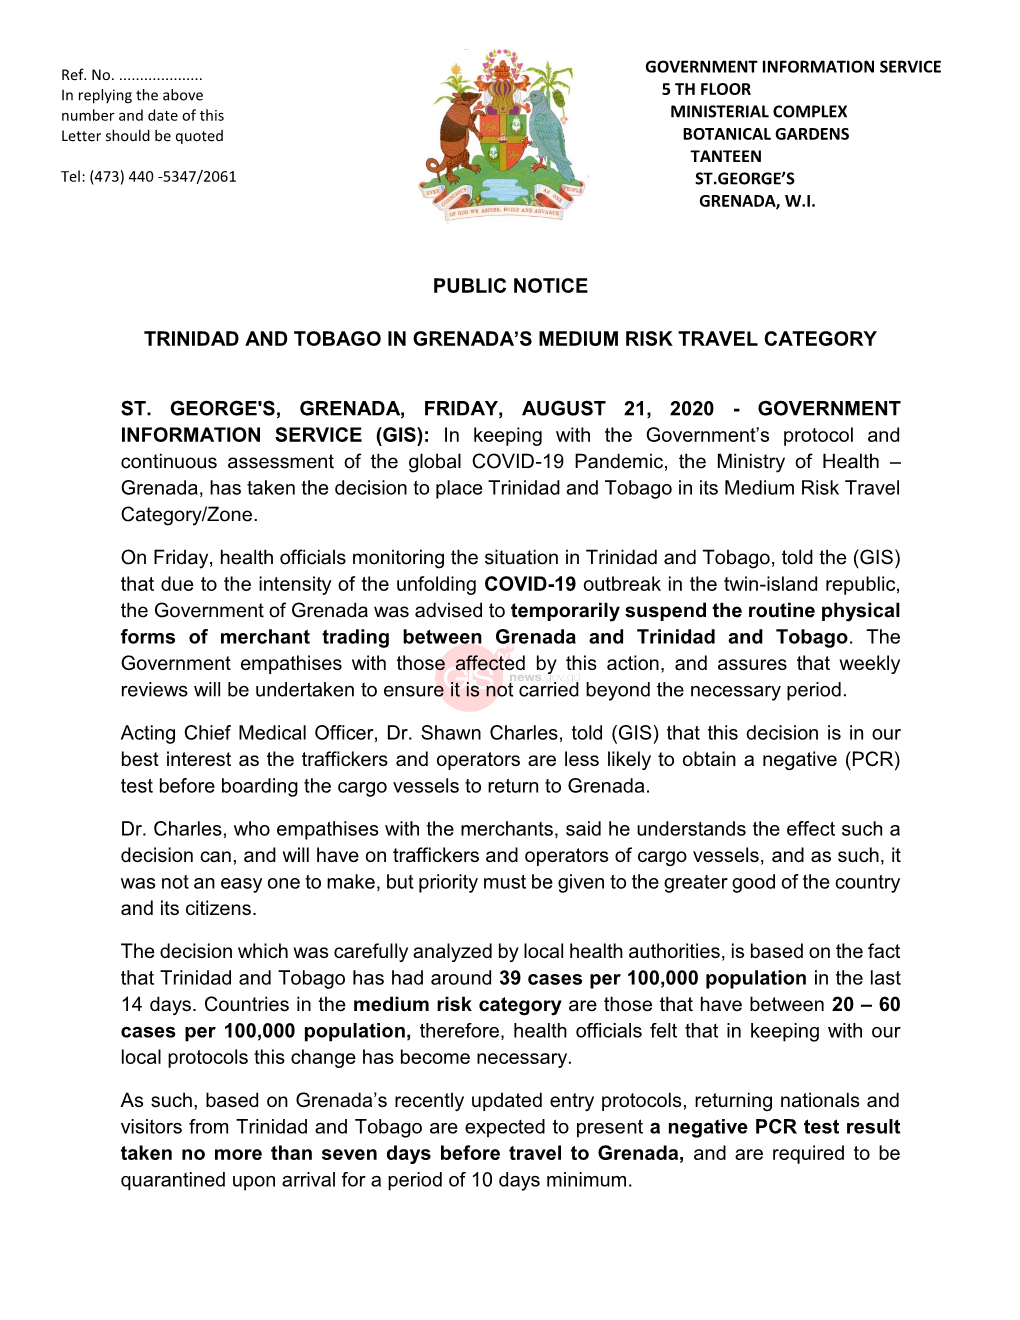 Public Notice Trinidad and Tobago in Grenada's Medium